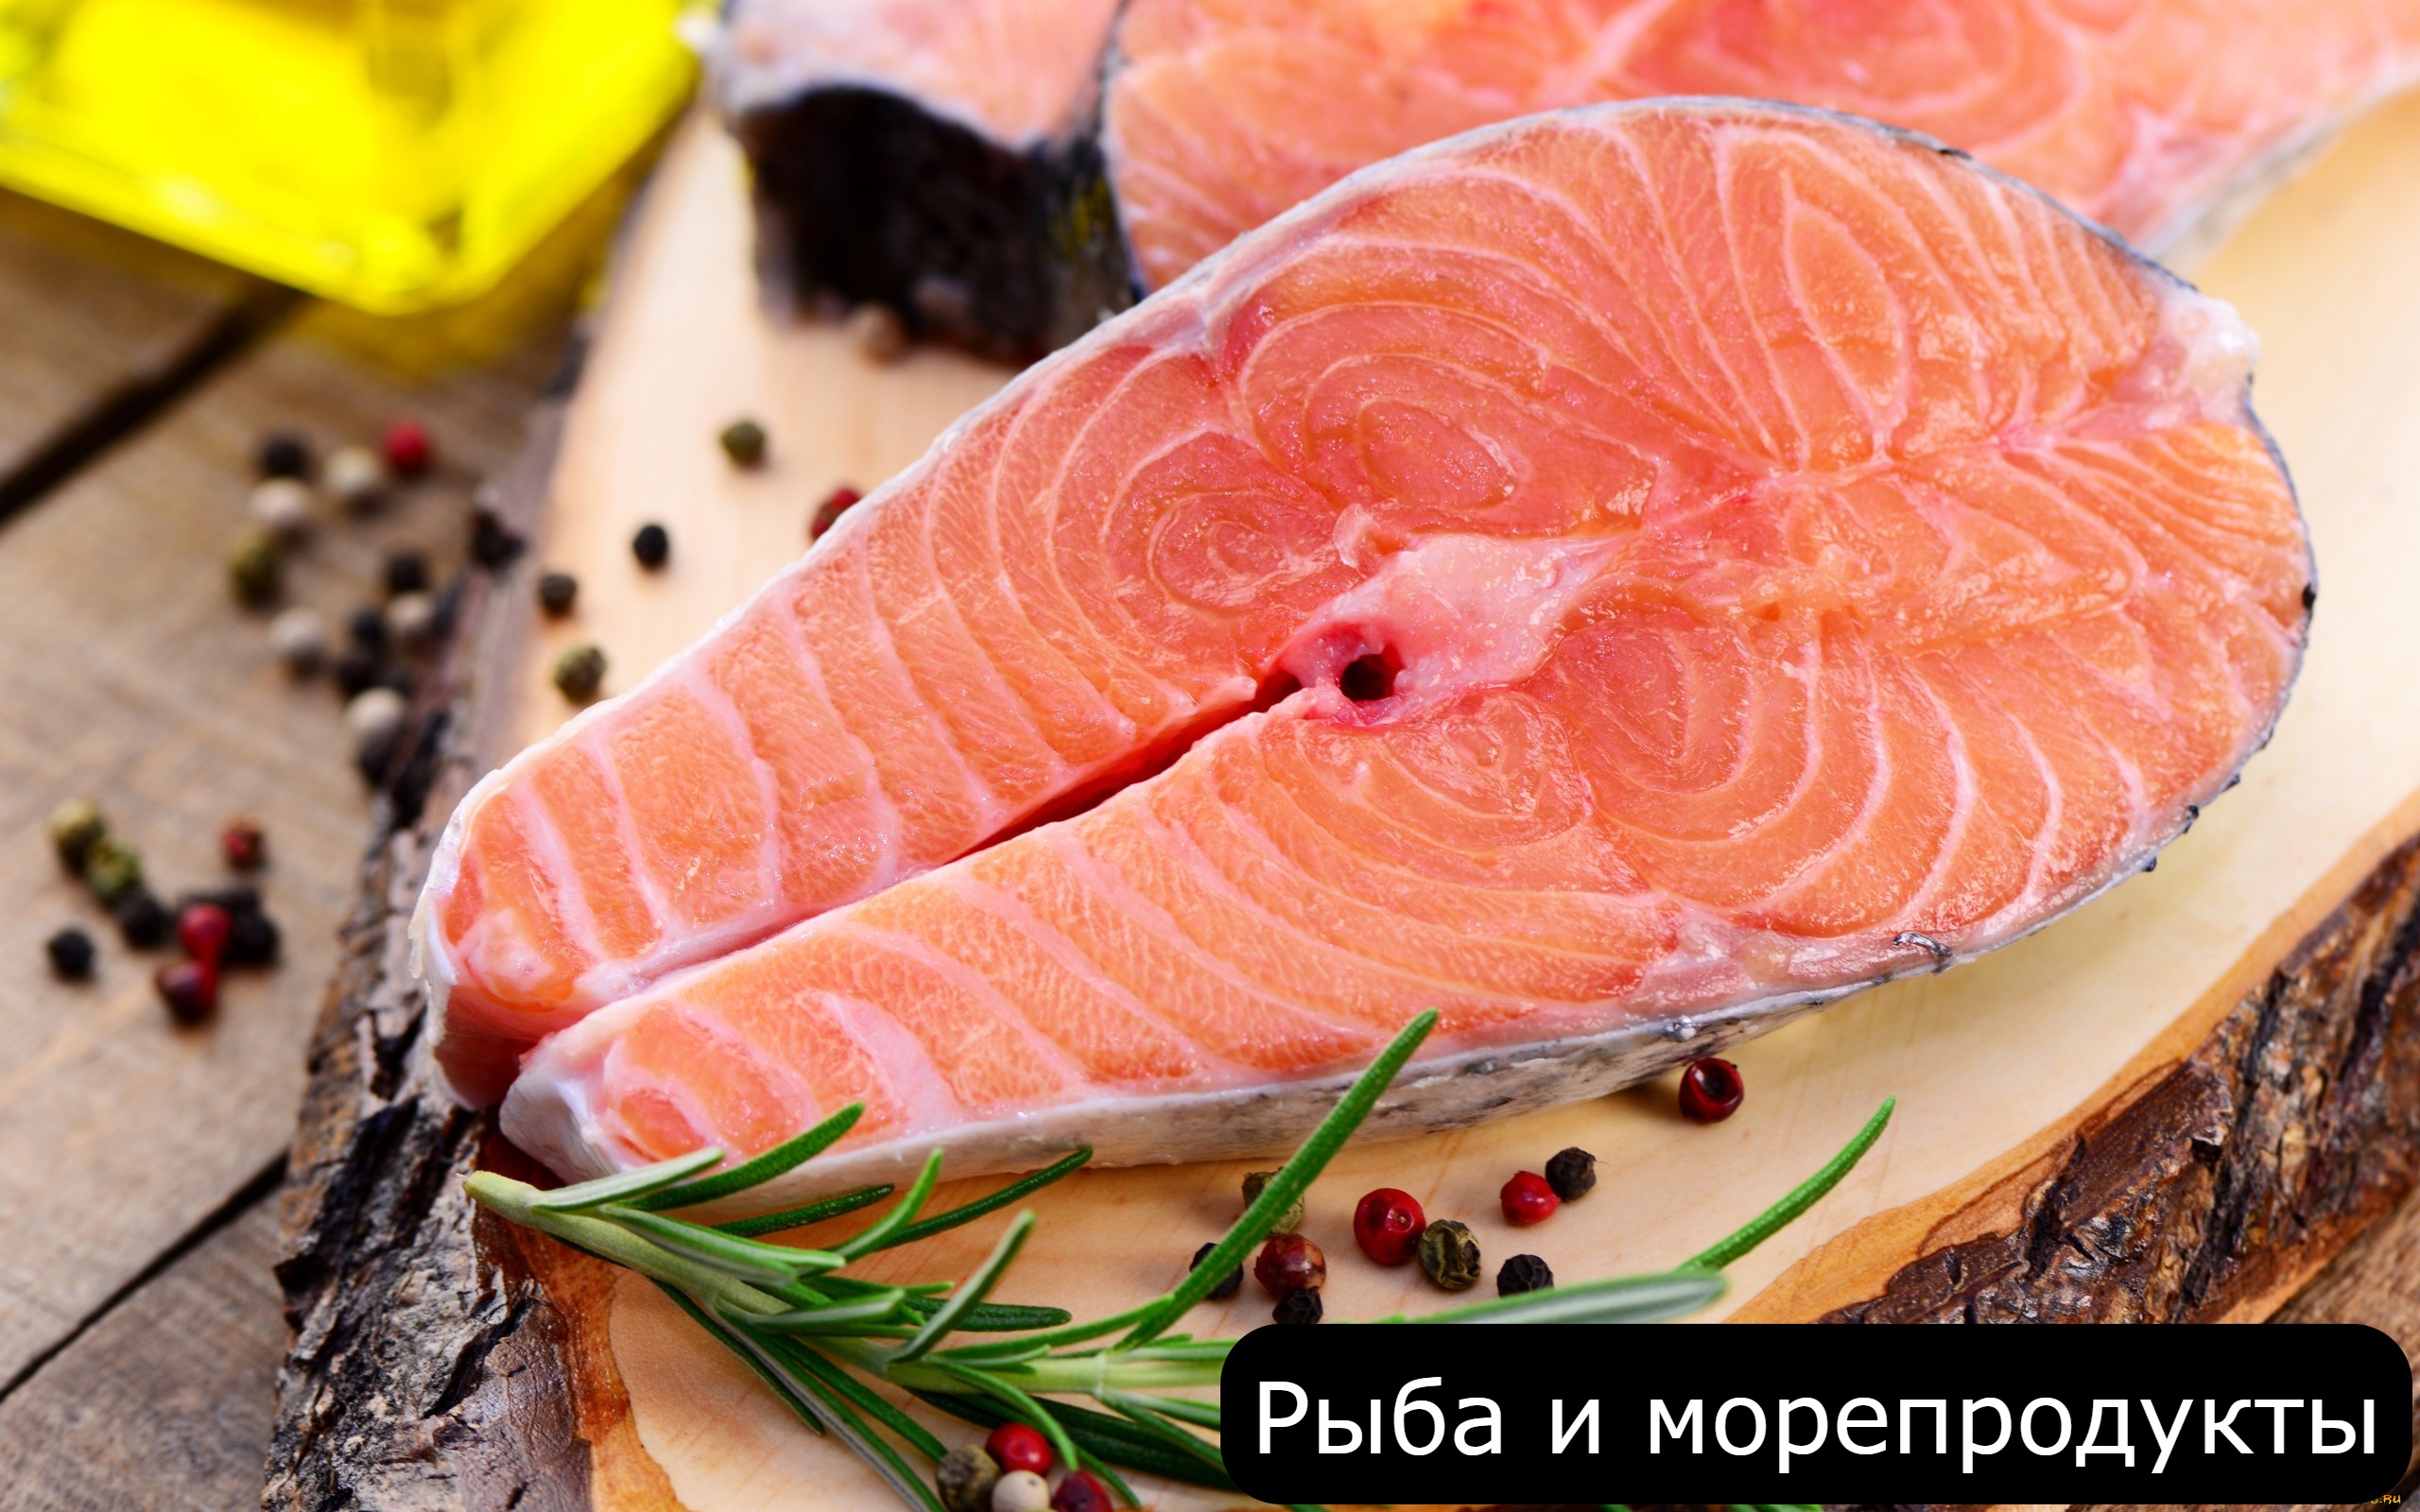 Цены на рыбу в Болгарии